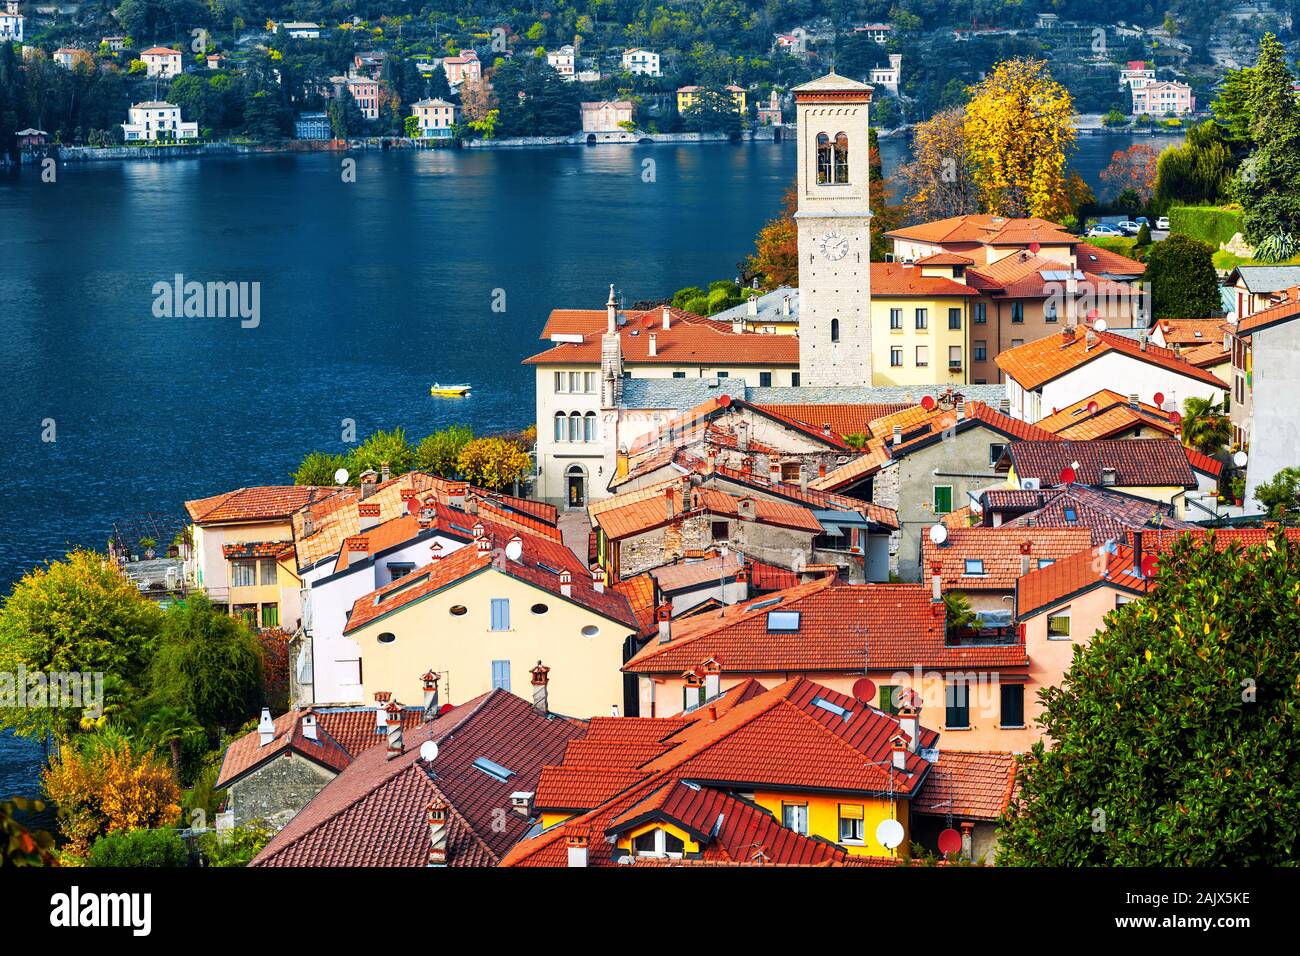 Comer See, Lombardei, Italien, Blick über die roten Ziegeldächer des malerischen Dorfes Torno. Der Comer See ist ein beliebtes Reiseziel in der Nähe von Mailand. Stockfoto